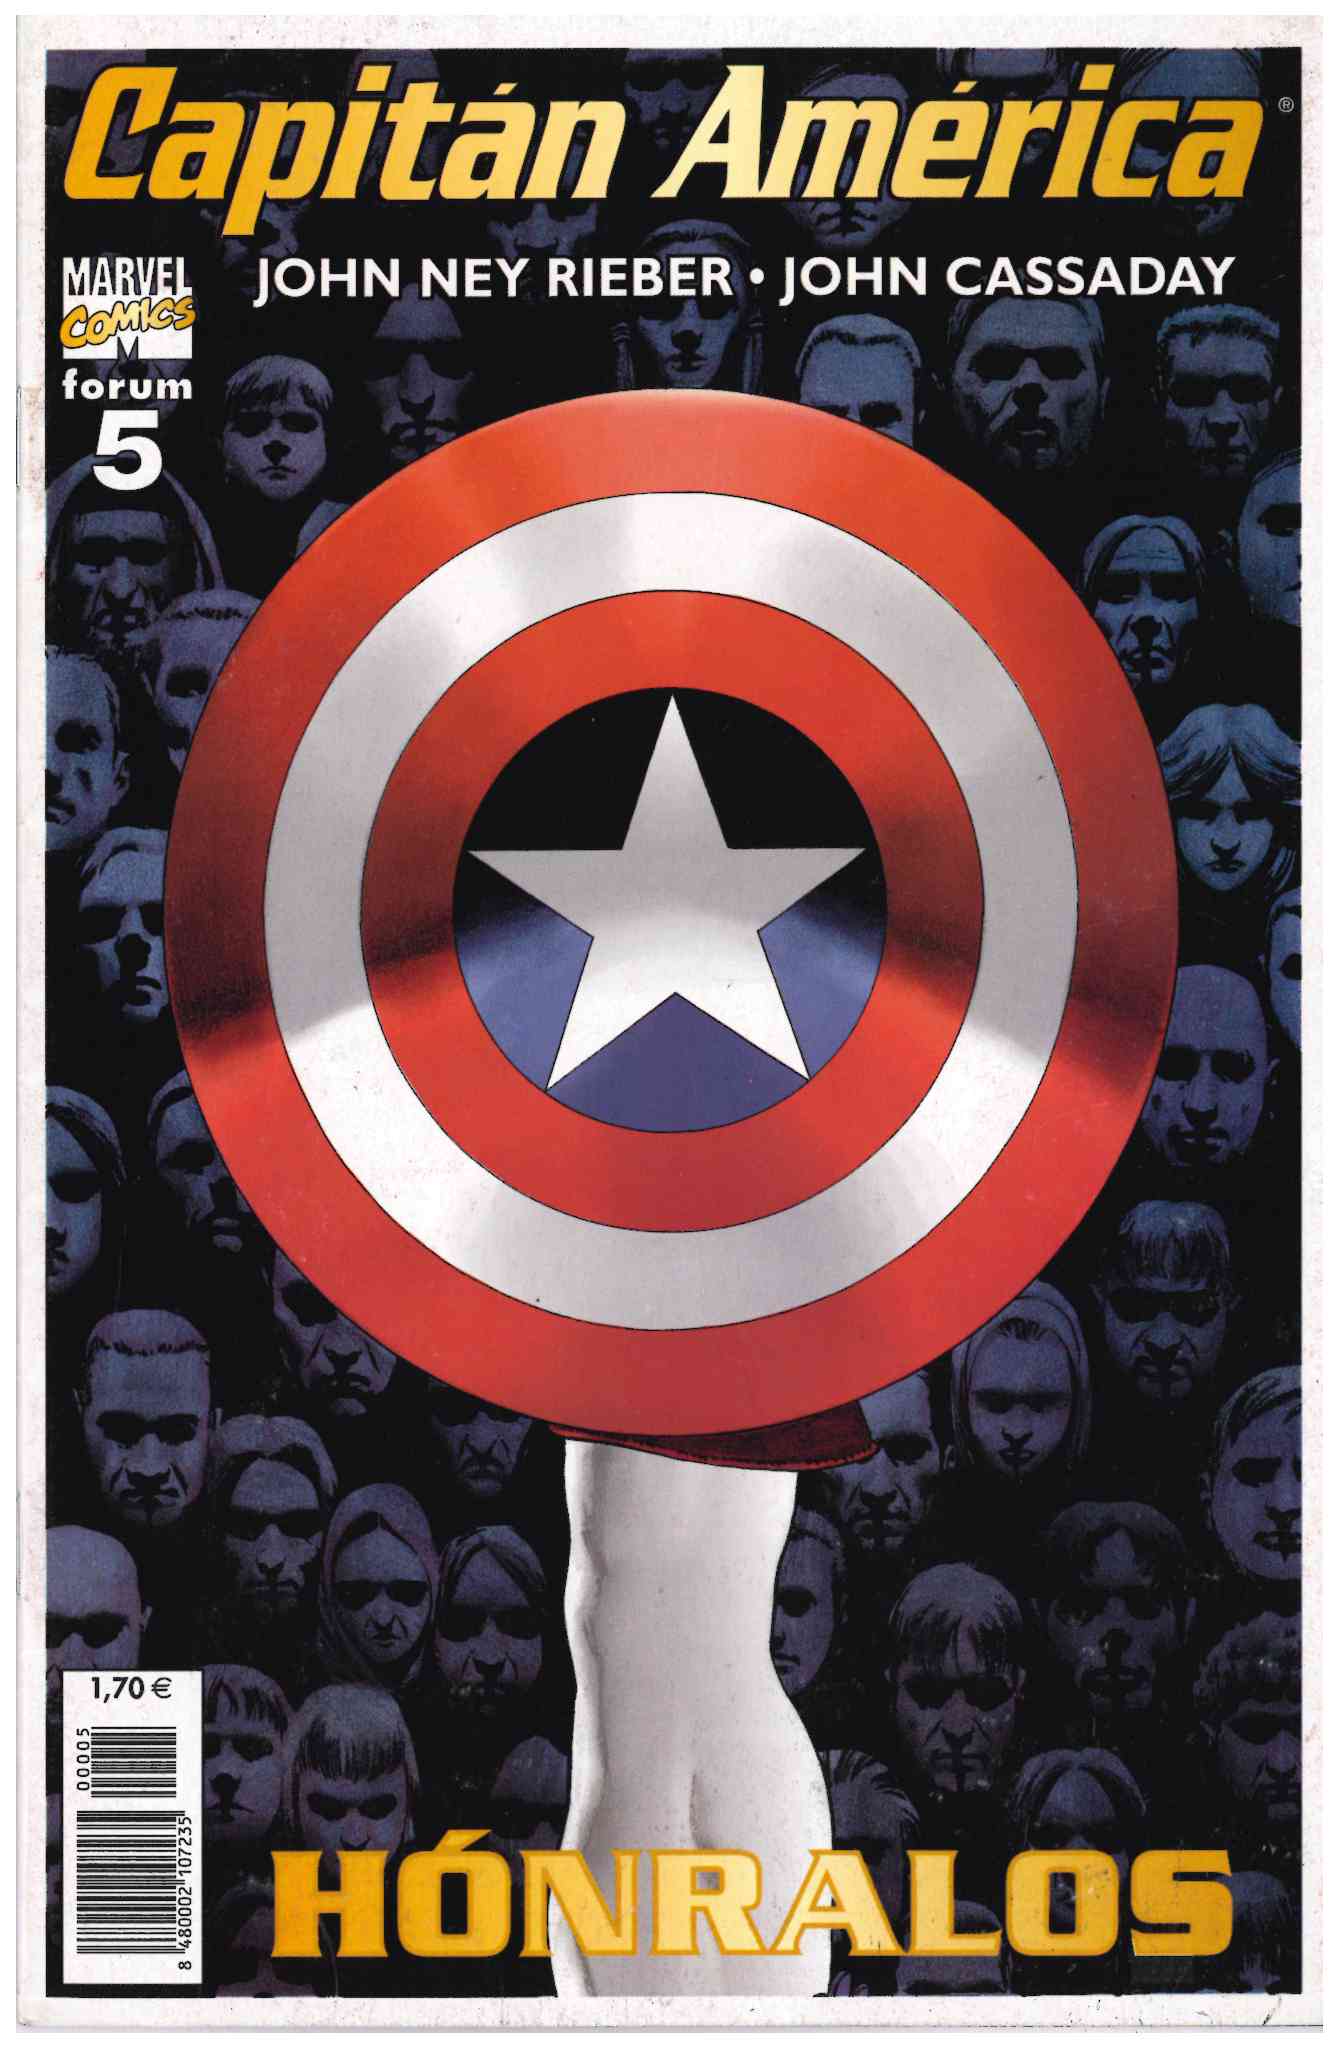 Capitán América v5. Forum 2003. Nº 5